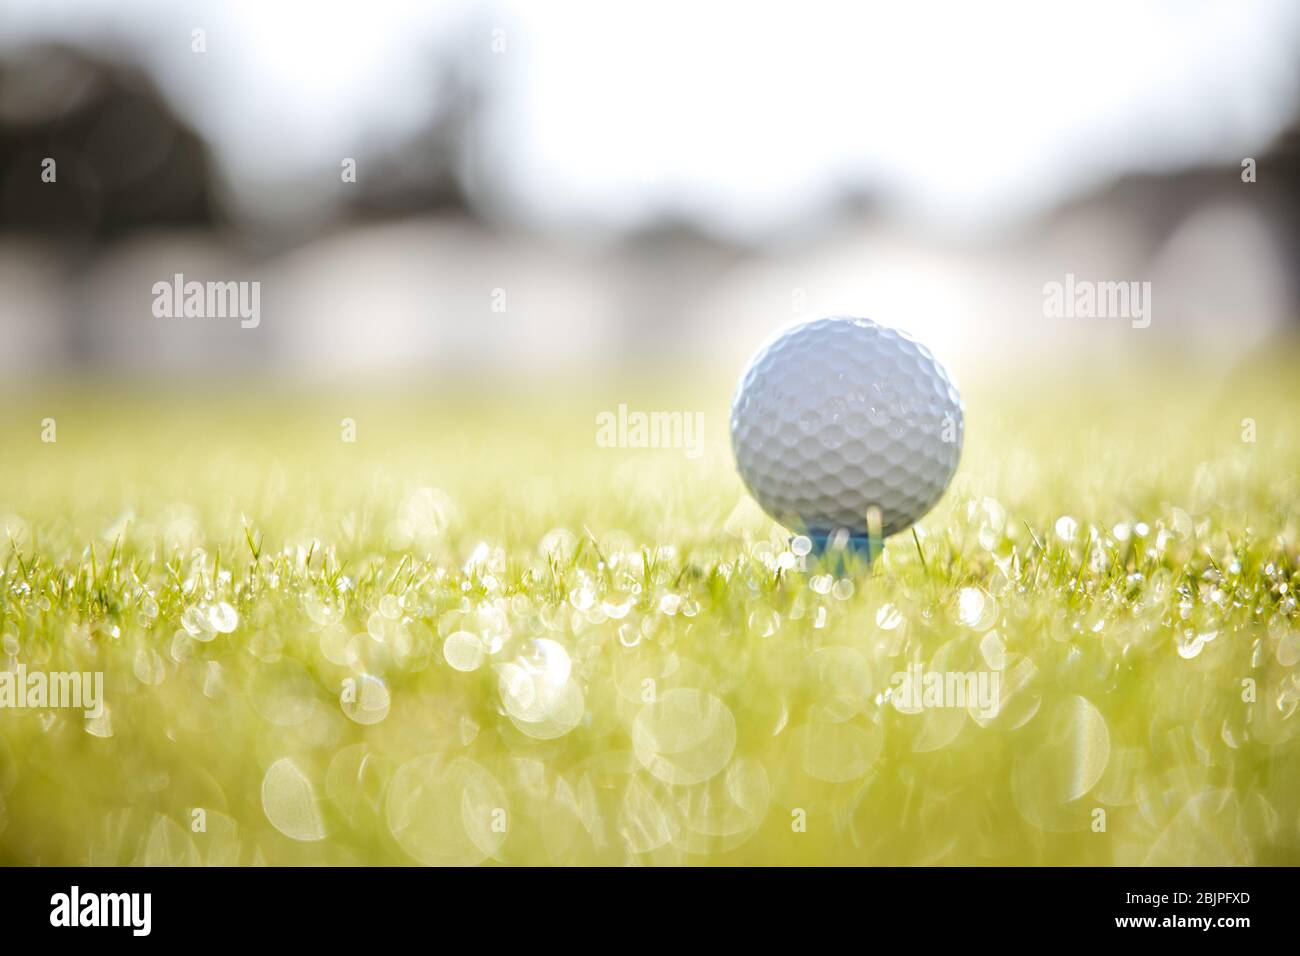 Club de Golf et balle sur tee en face de driver Banque D'Images